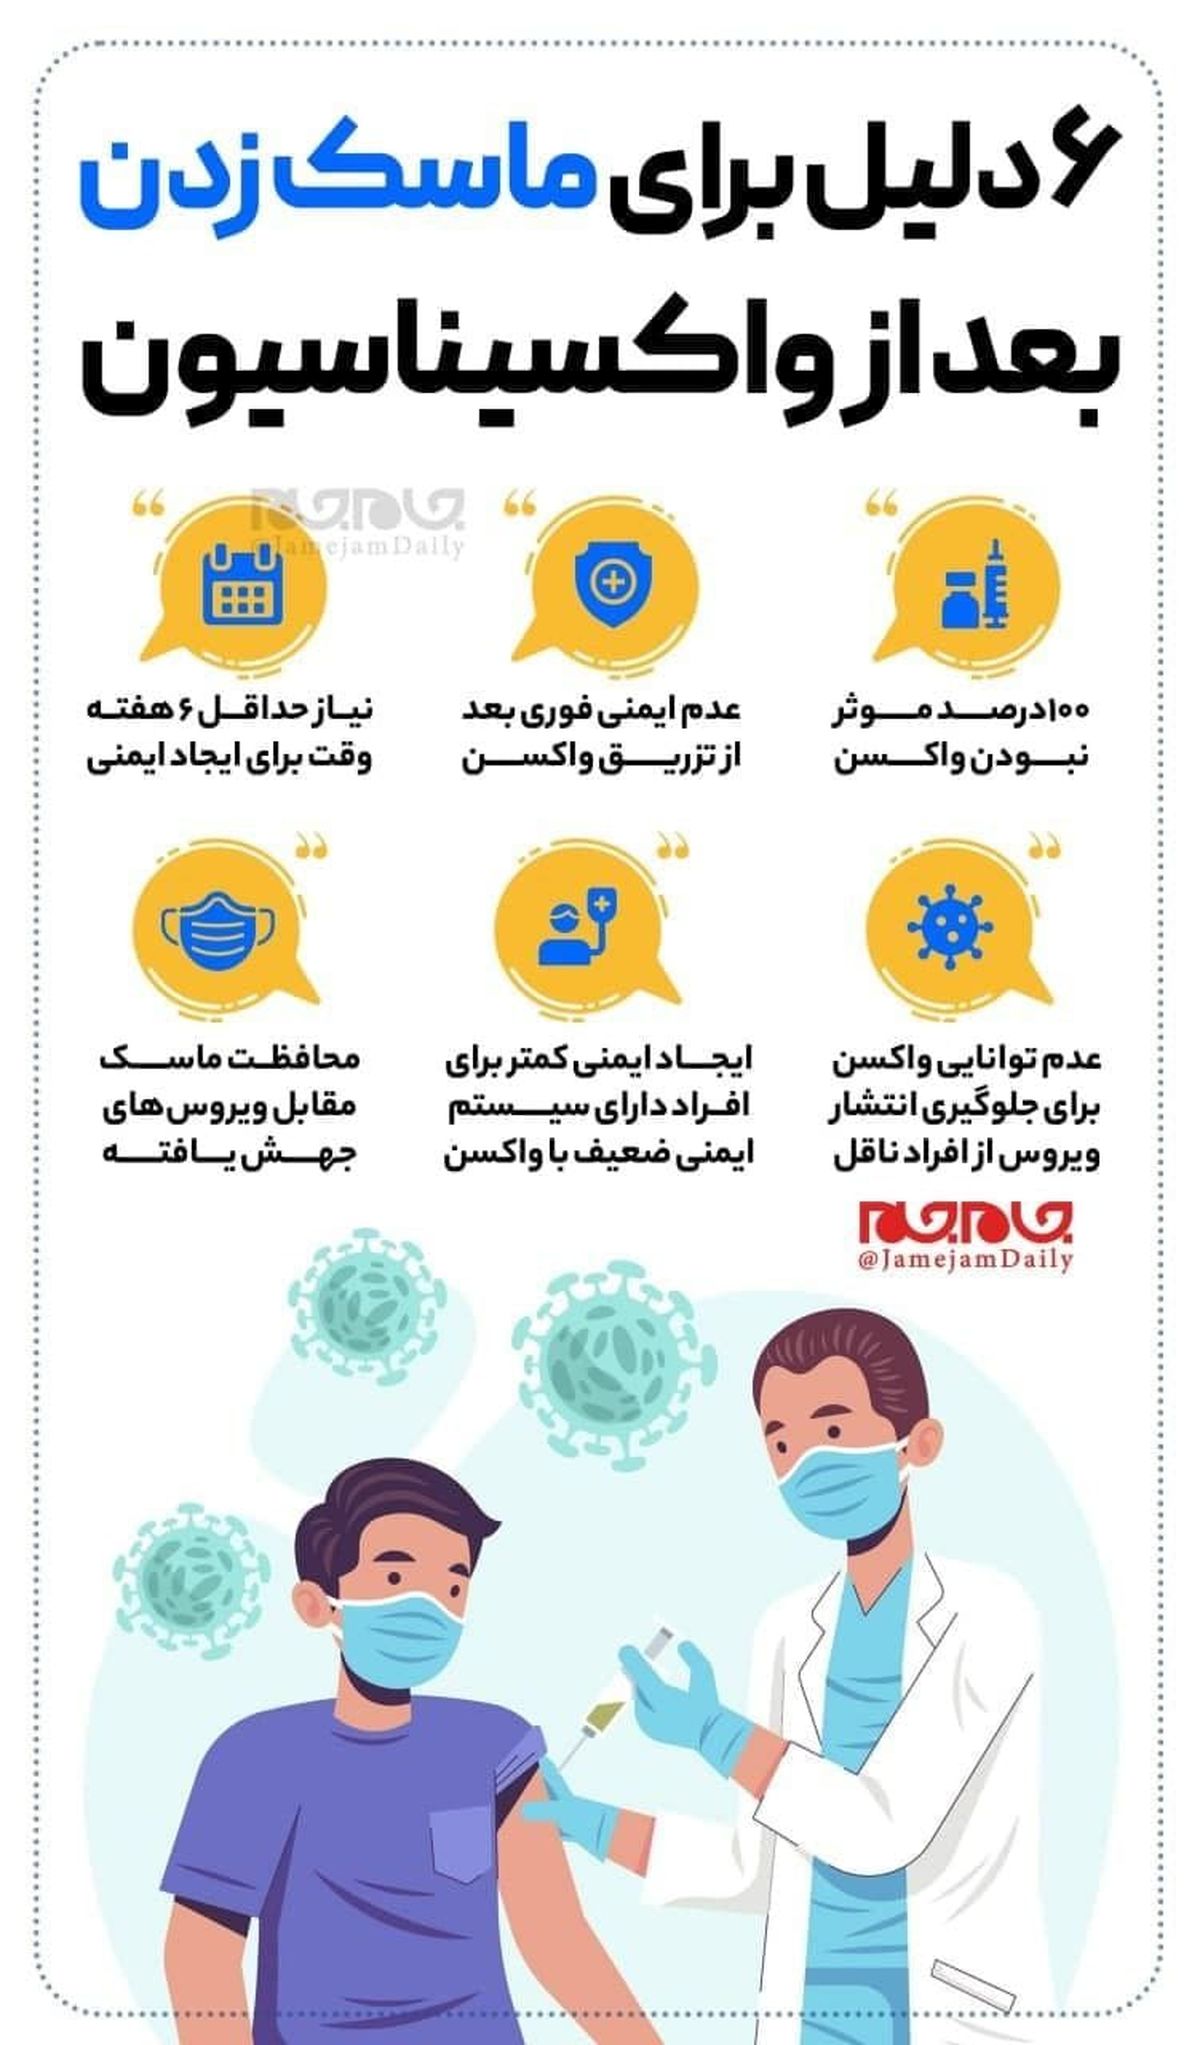 ۶دلیل برای ماسک زدن بعد از واکسیناسیون